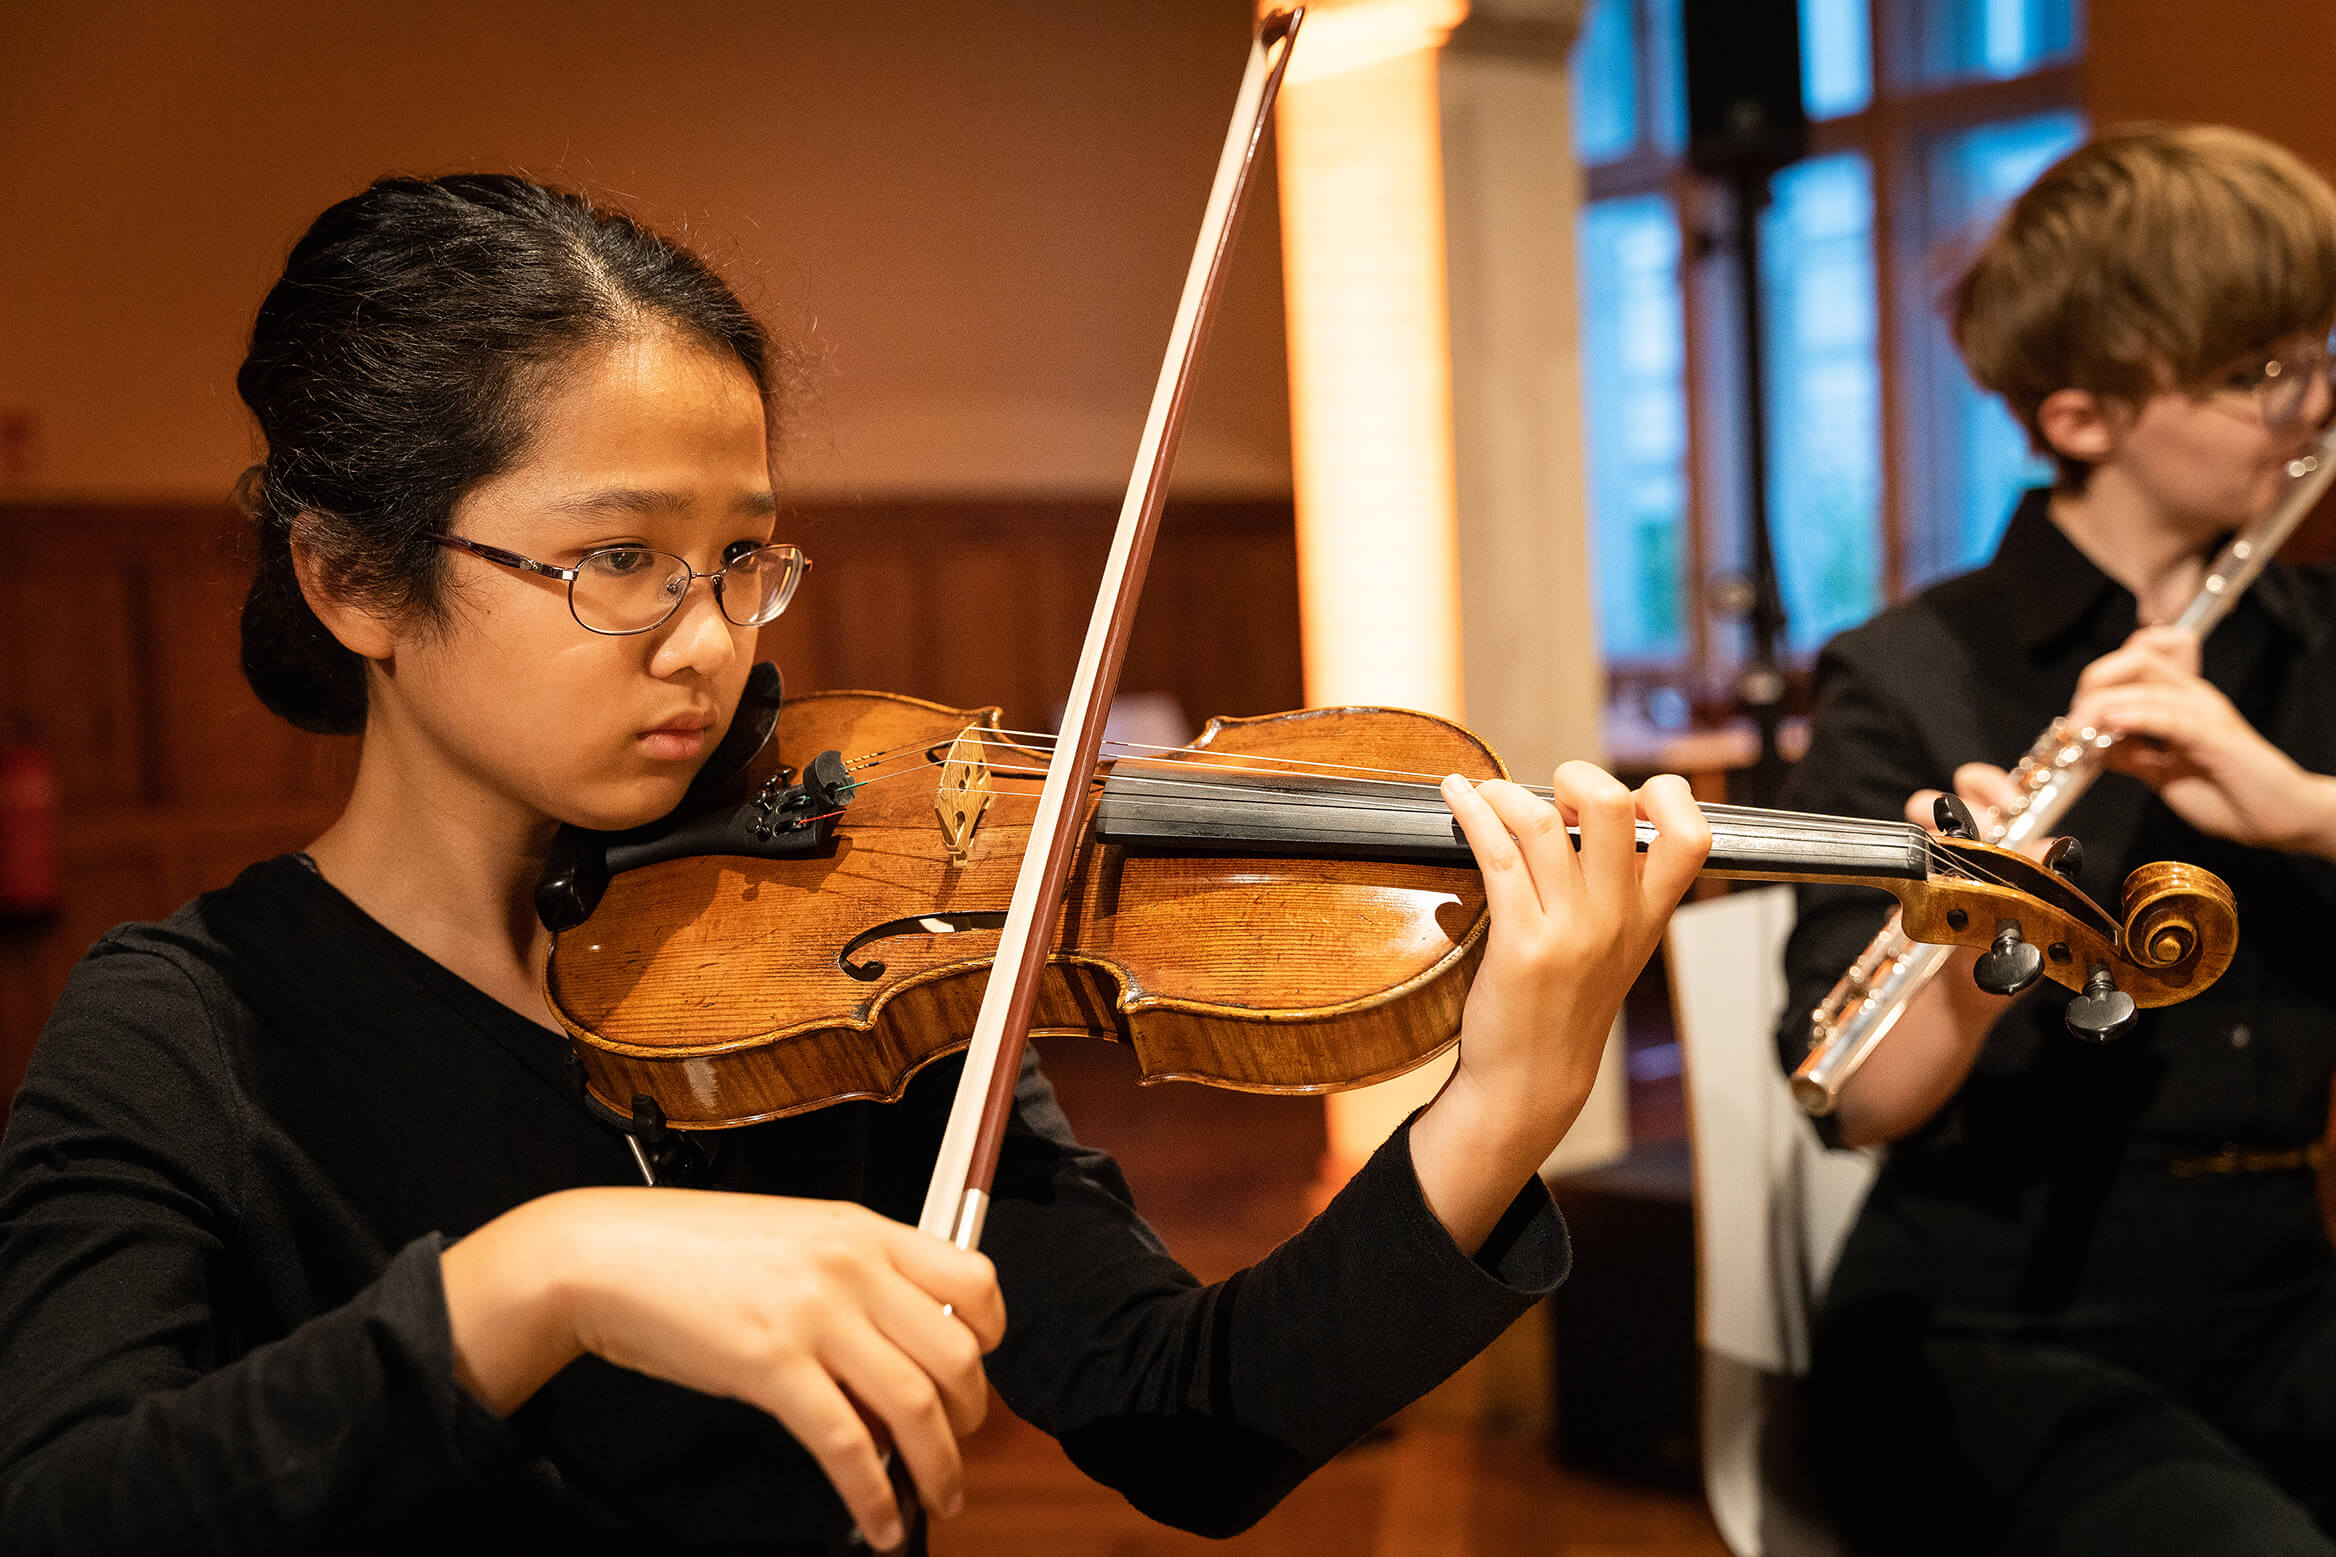 Das Bild zeigt eine junge Violonistin beim spielen, während der Konzertaufführung